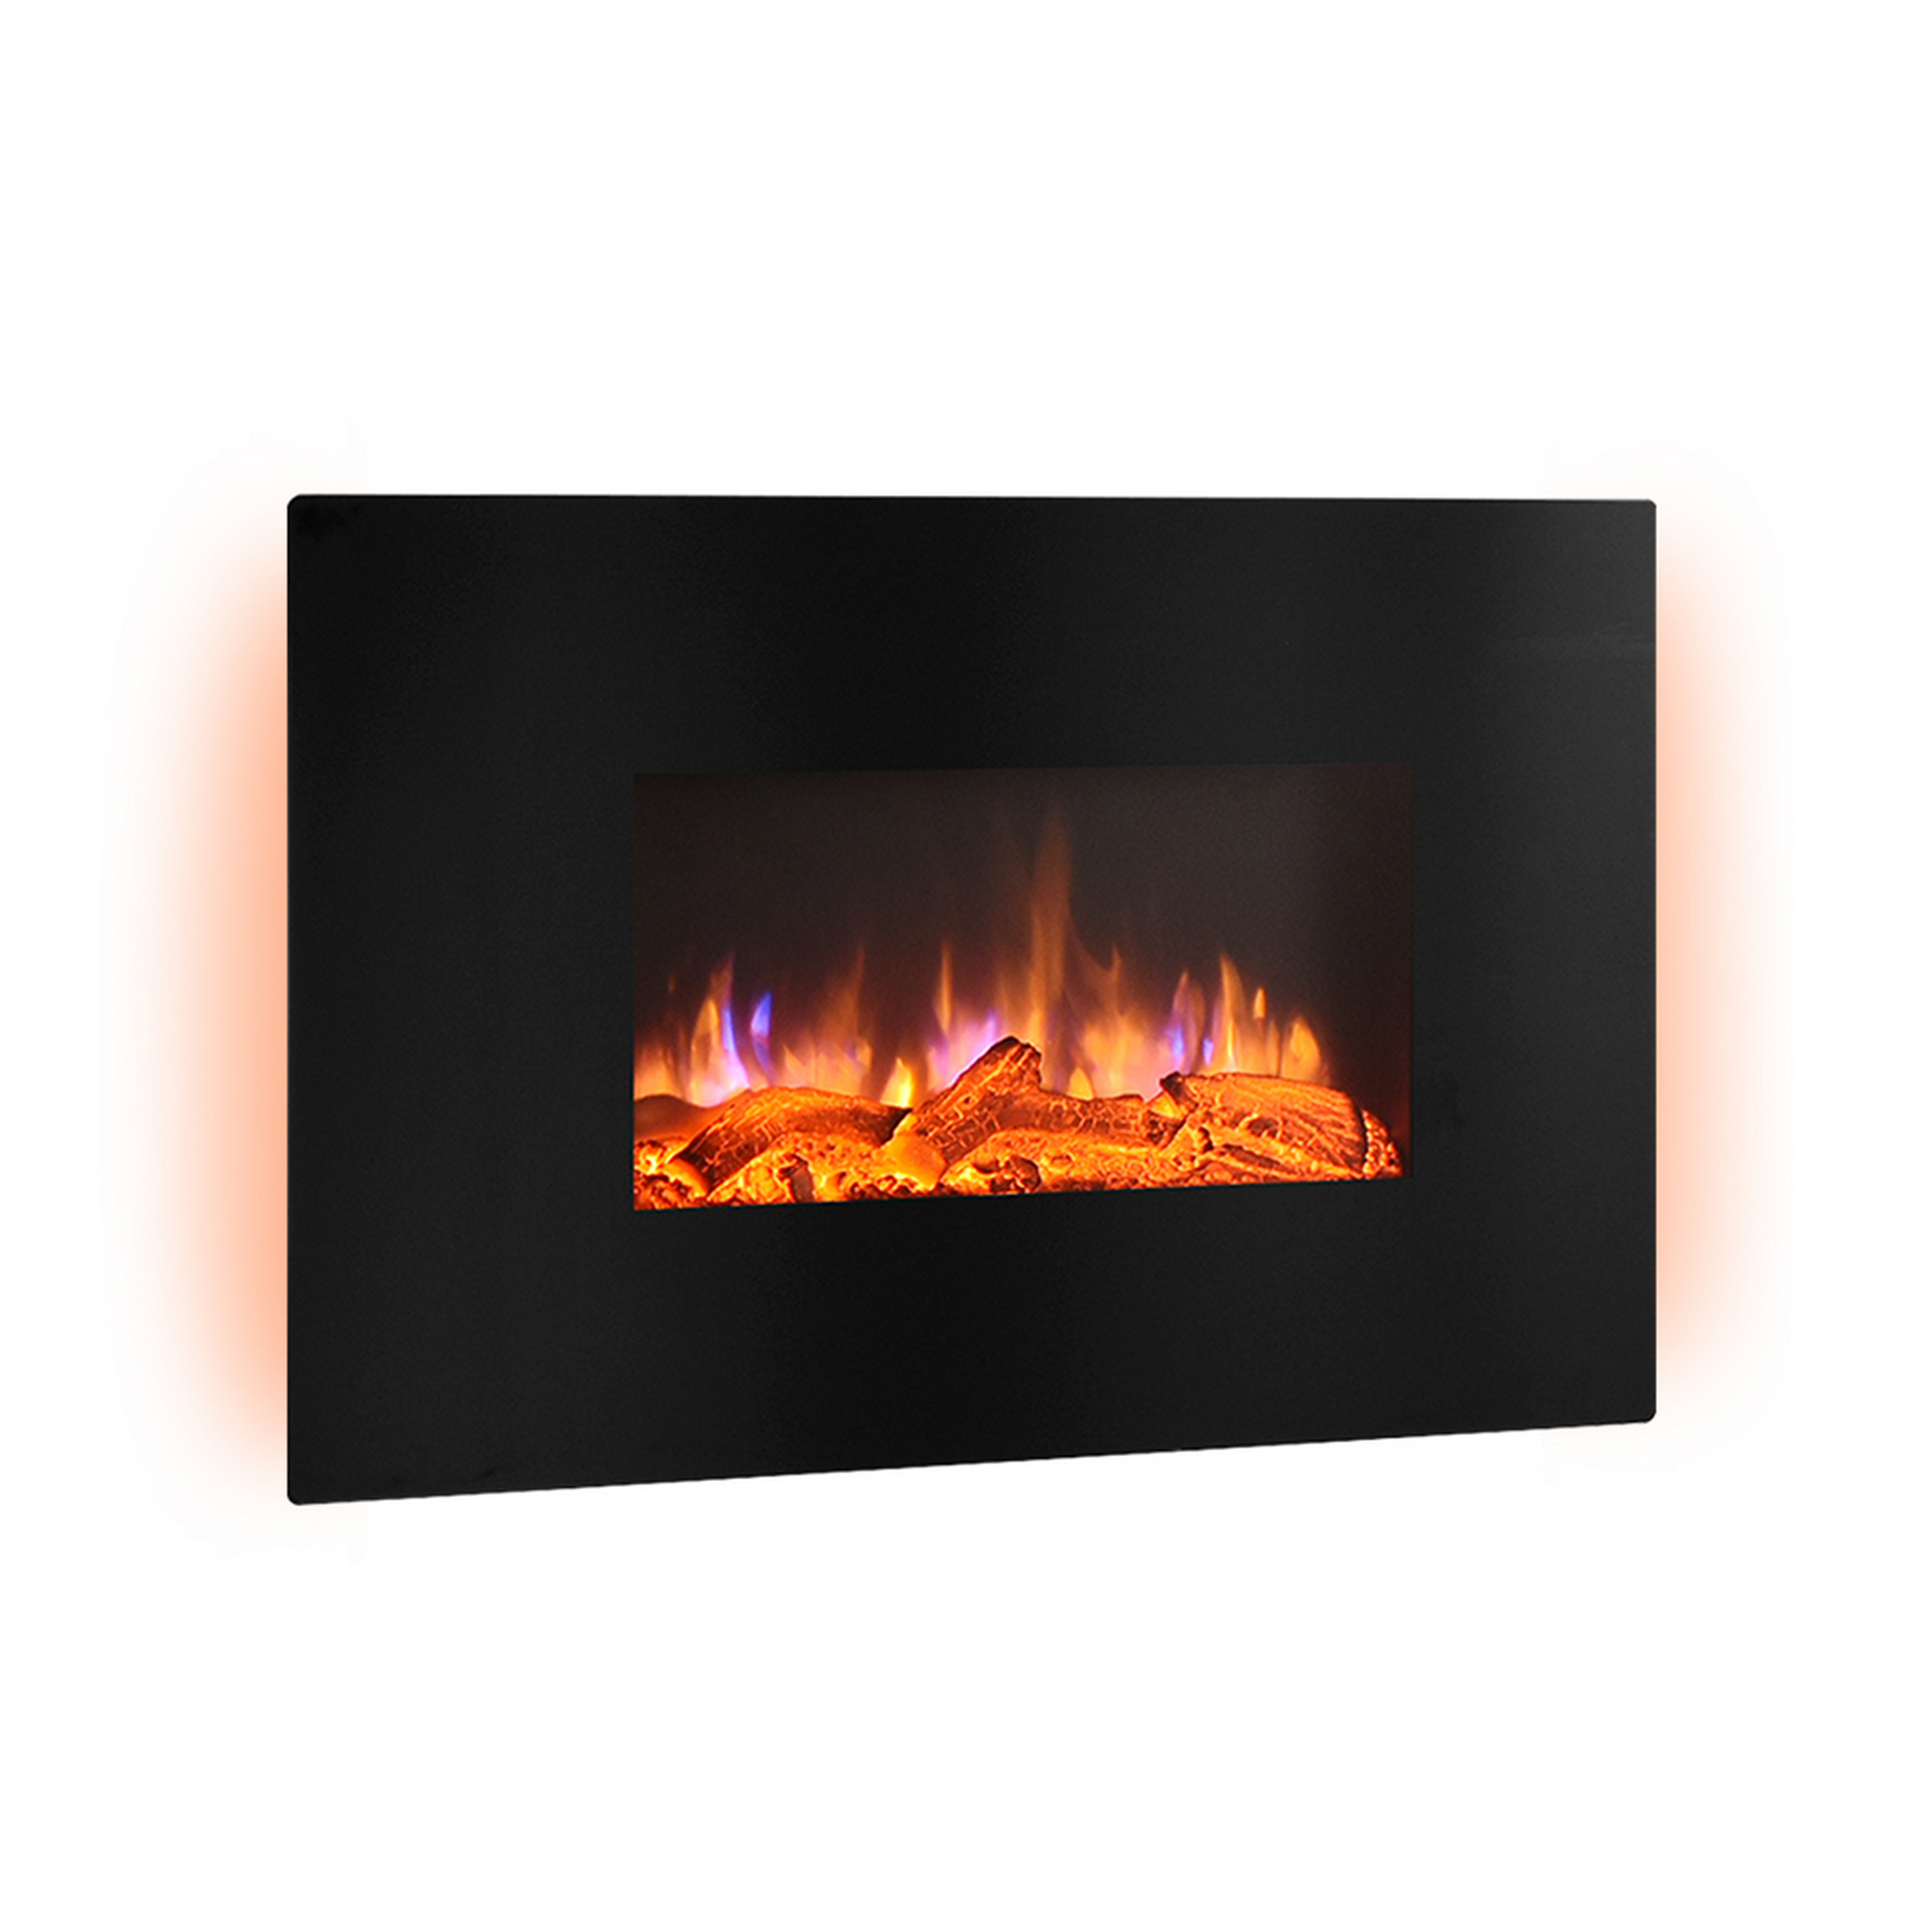 Elektro-Wandkamin 'Enja' schwarz 2000 W, 3D-Flammeneffekt Fernbedienung 58 x 91 x 18 cm + product picture